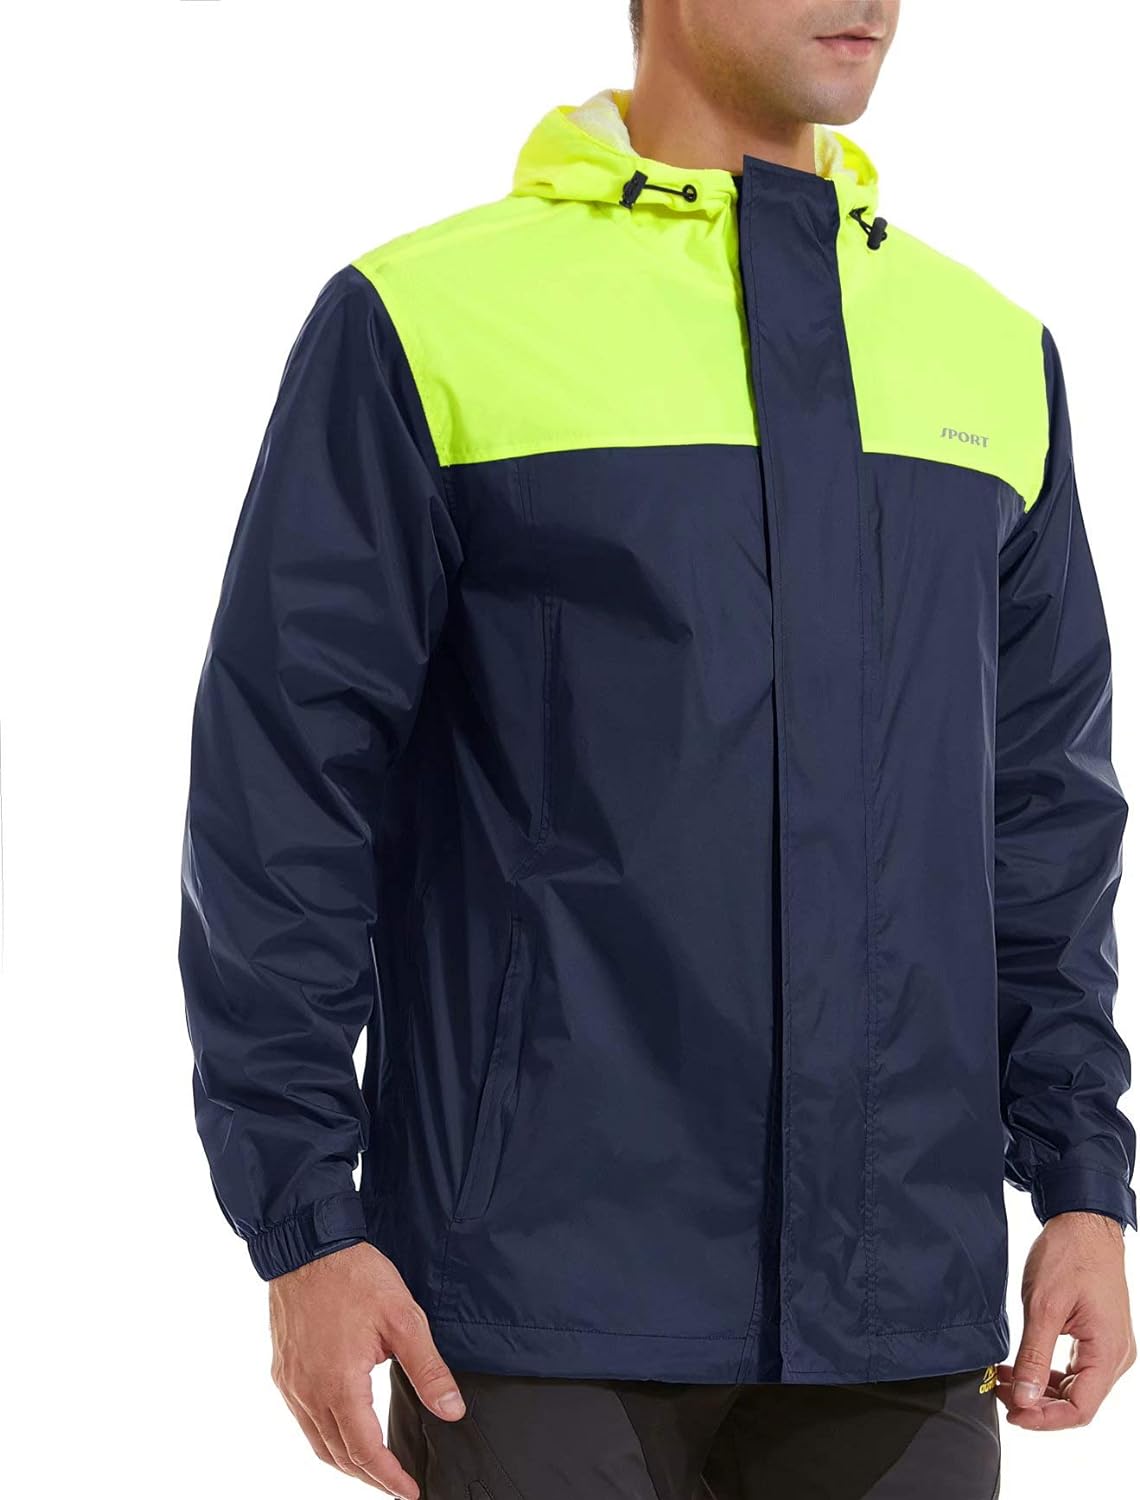 MERAKI Mens Water Resistant Raincoat Brand